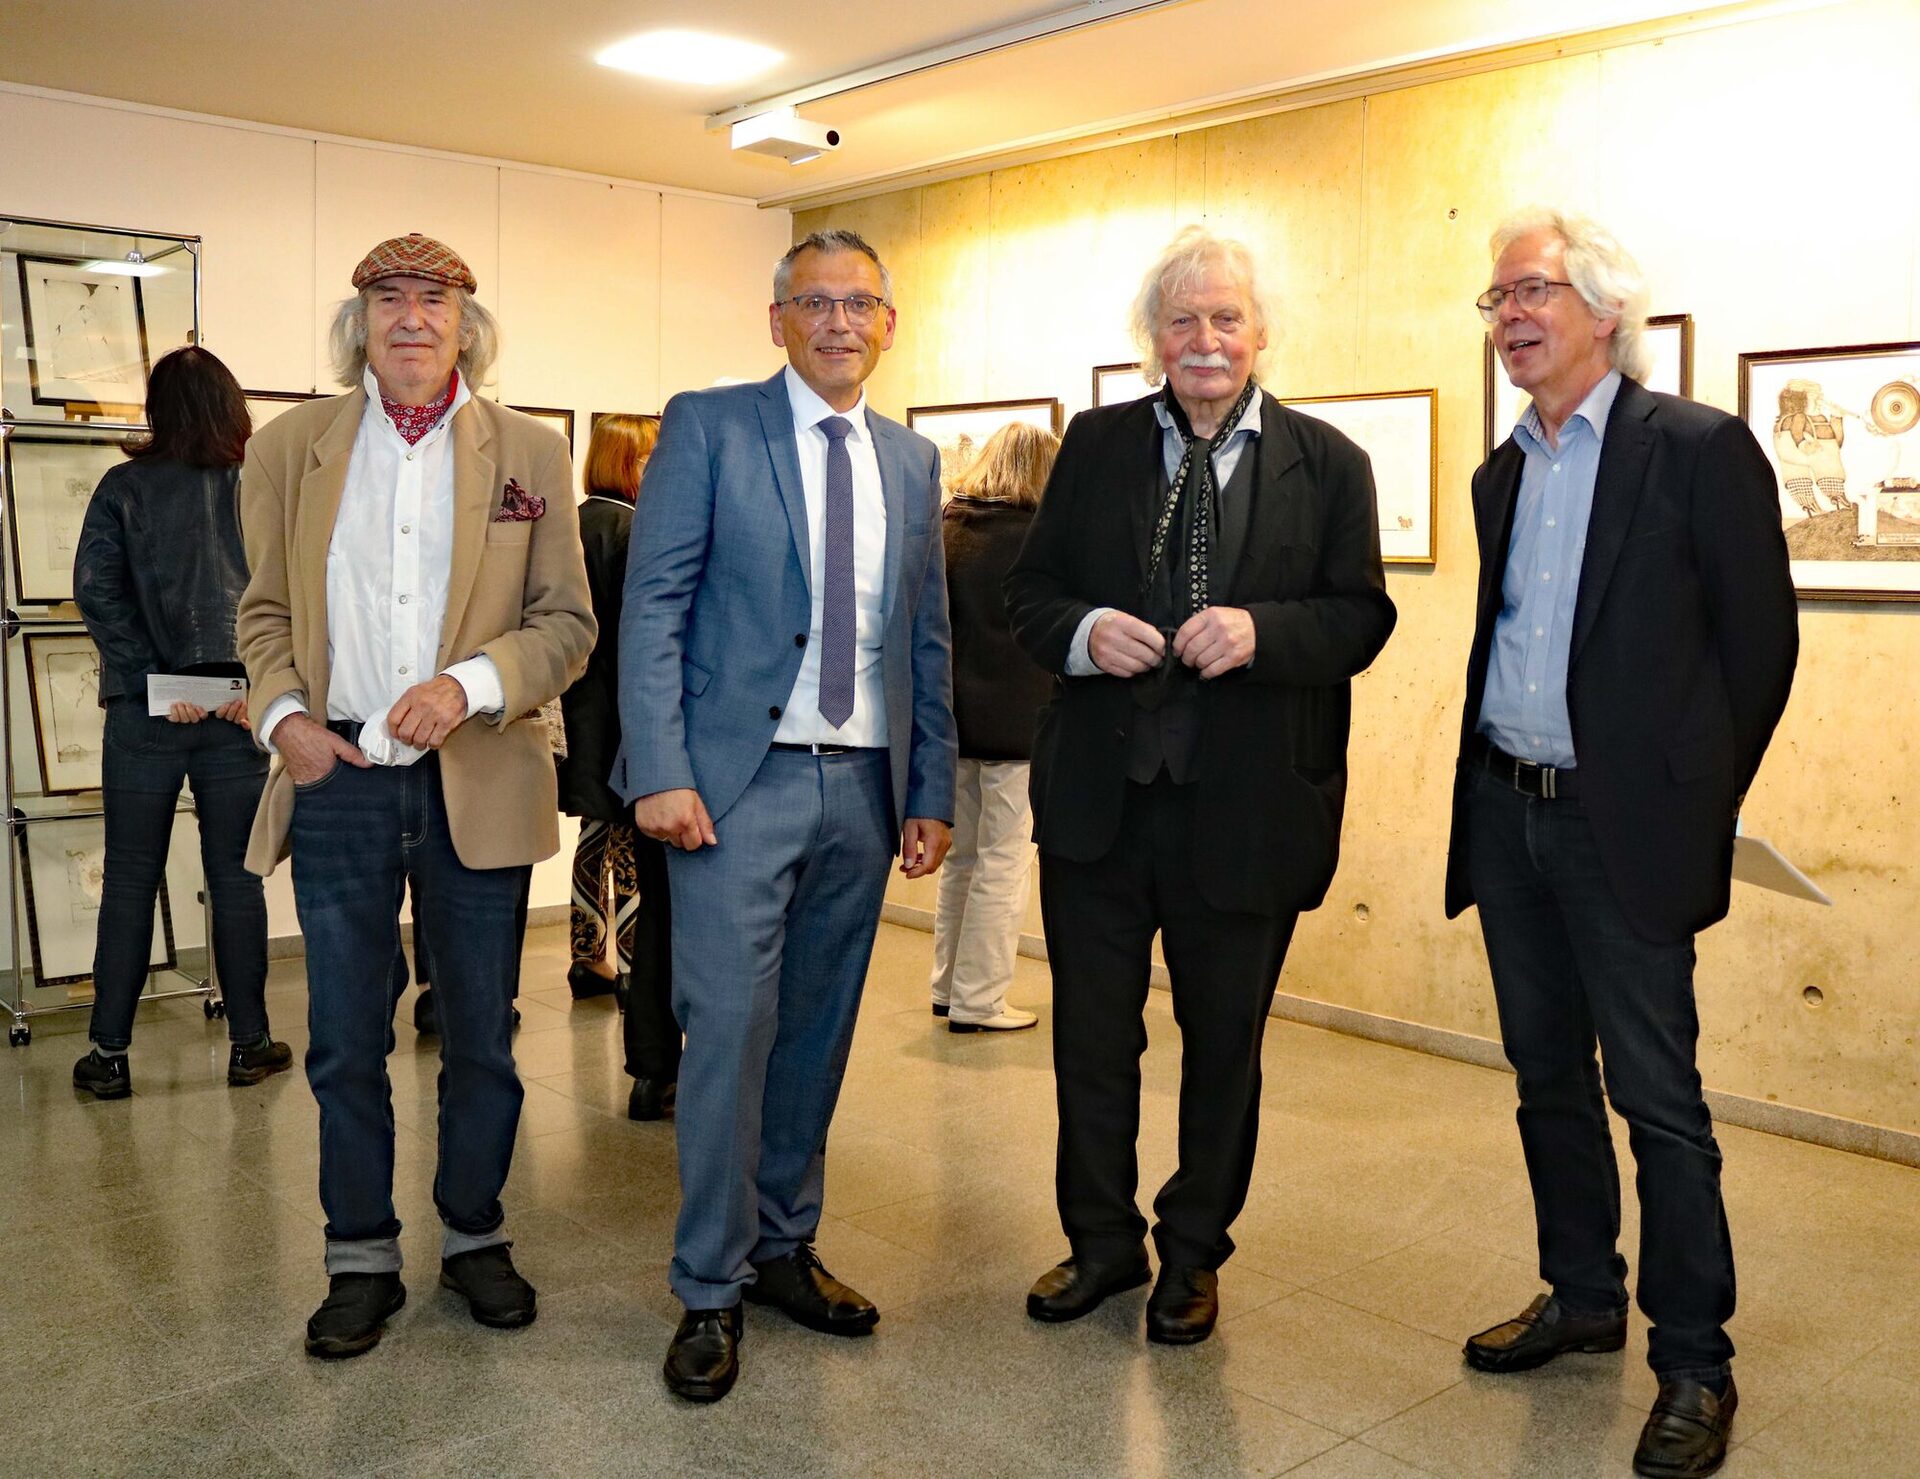 Ausstellungeröffnung im Kreishaus mit (v.l.) Pit Morell, Landrat Andreas Siebert, Ali Schindehütte und Prof. Dr. Bernd Küster.